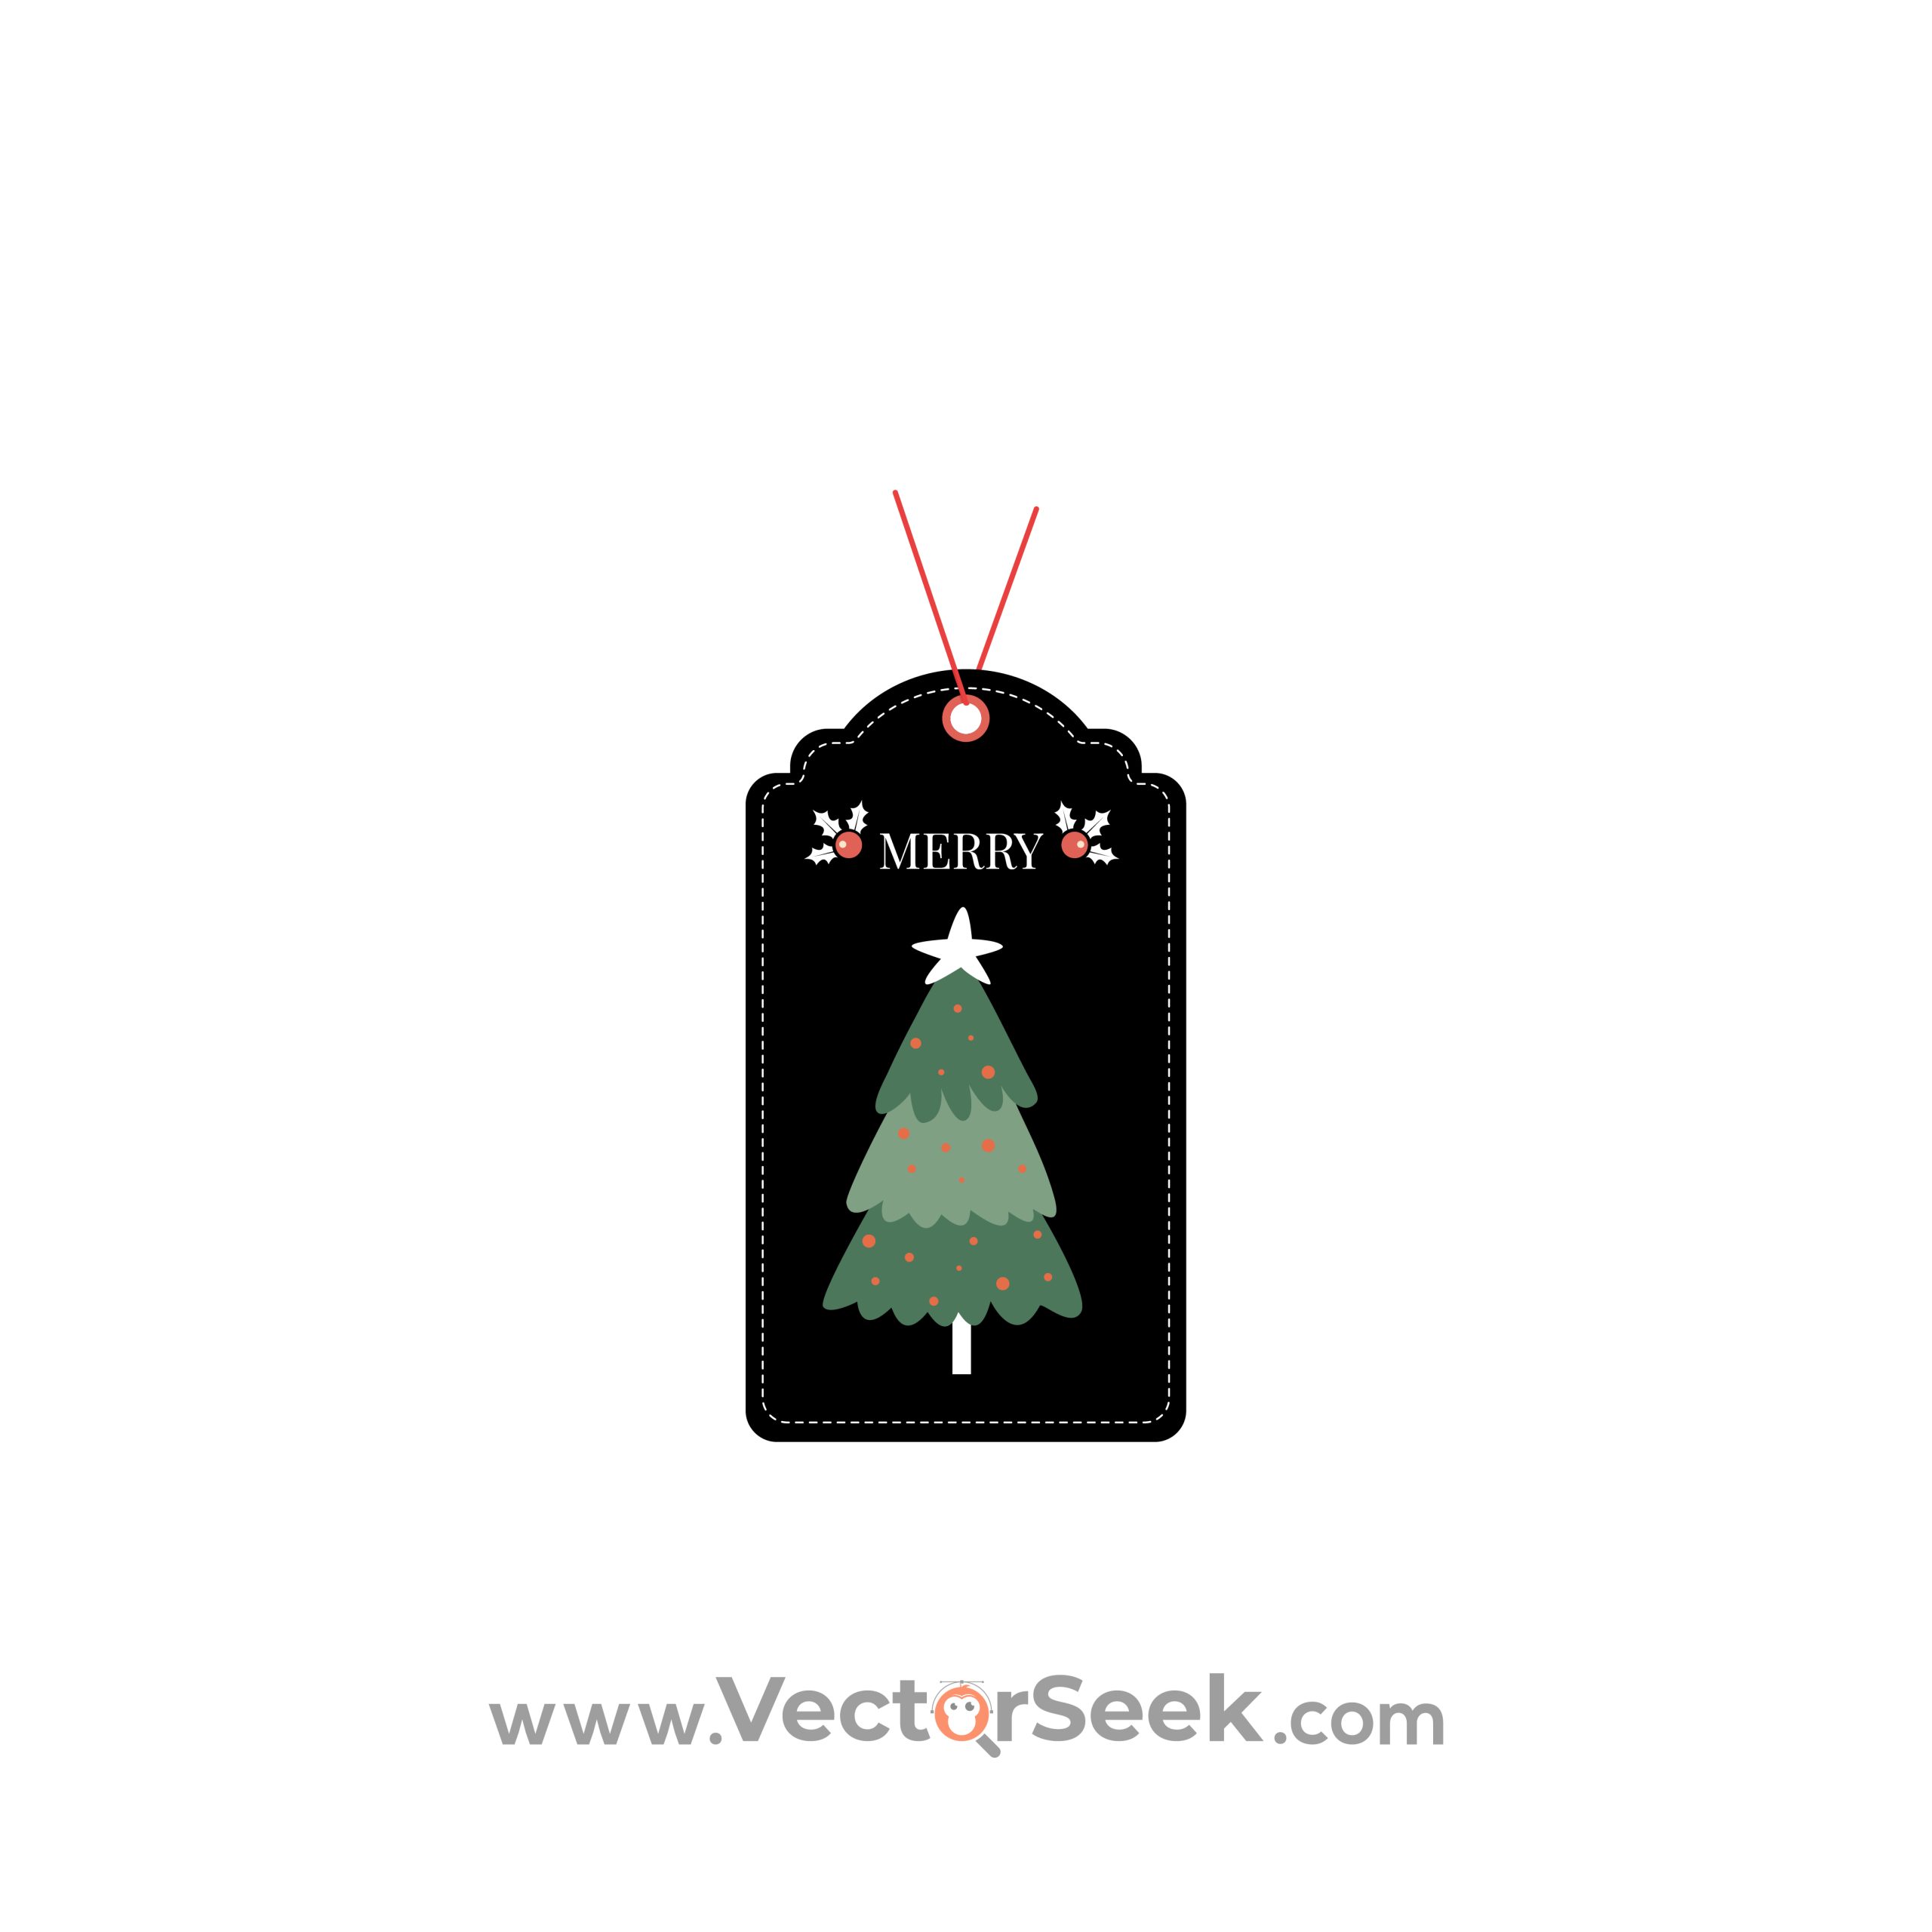 Merry Christmas Tag With Christmas Tree